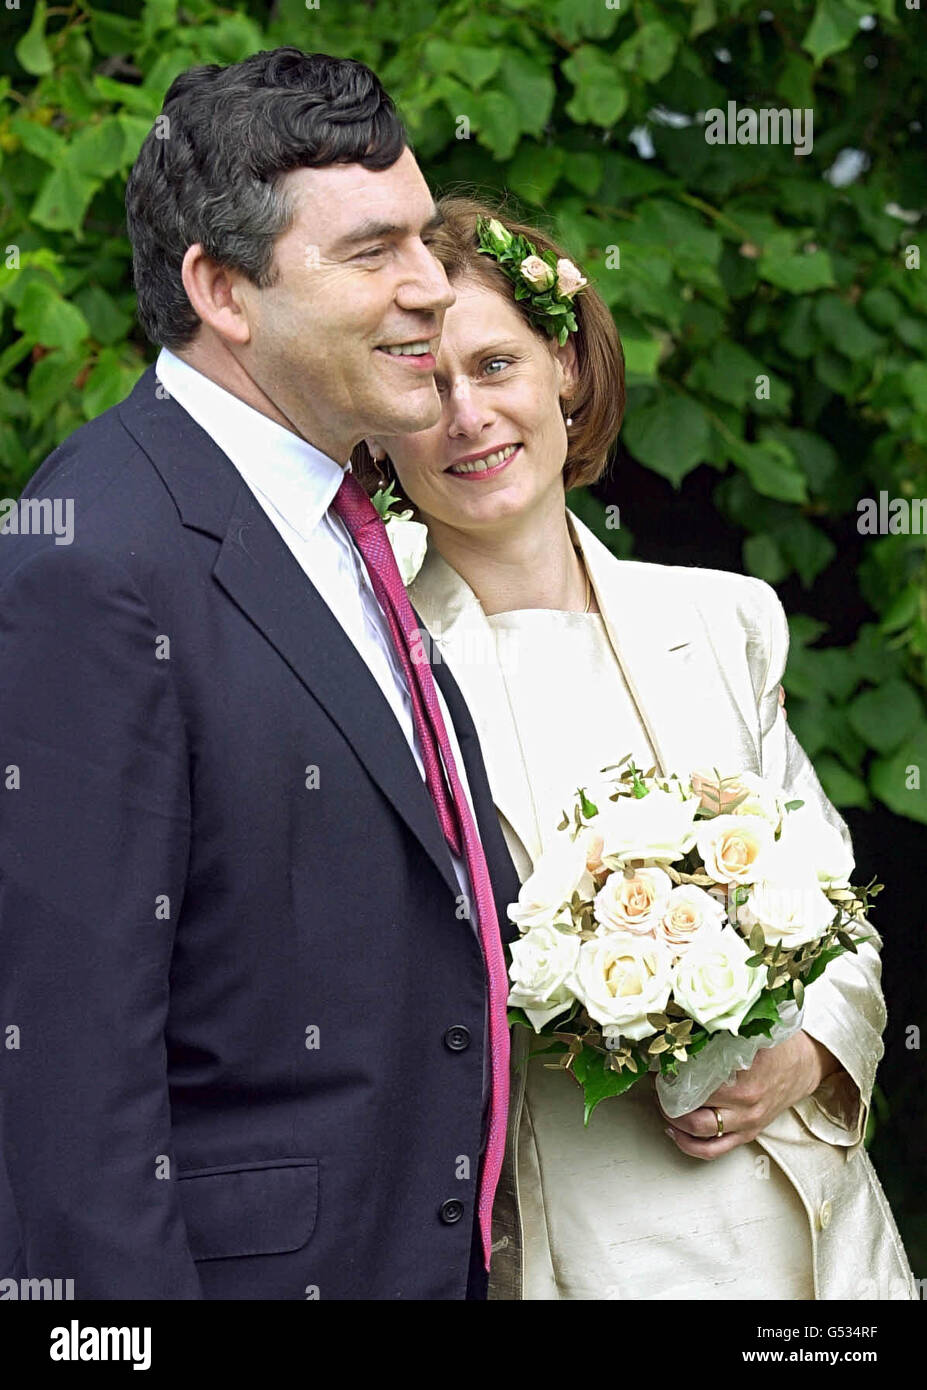 Il Cancelliere Gordon Brown, 49 anni, e sua moglie, l'esecutivo del PR Sarah Macaulay, 36 anni, dopo il loro matrimonio in una piccola cerimonia privata tenuta nella sua casa a North Queensferry, Fife. La coppia ha goduto di un corteggiamento di 6 anni prima del loro matrimonio. Foto Stock